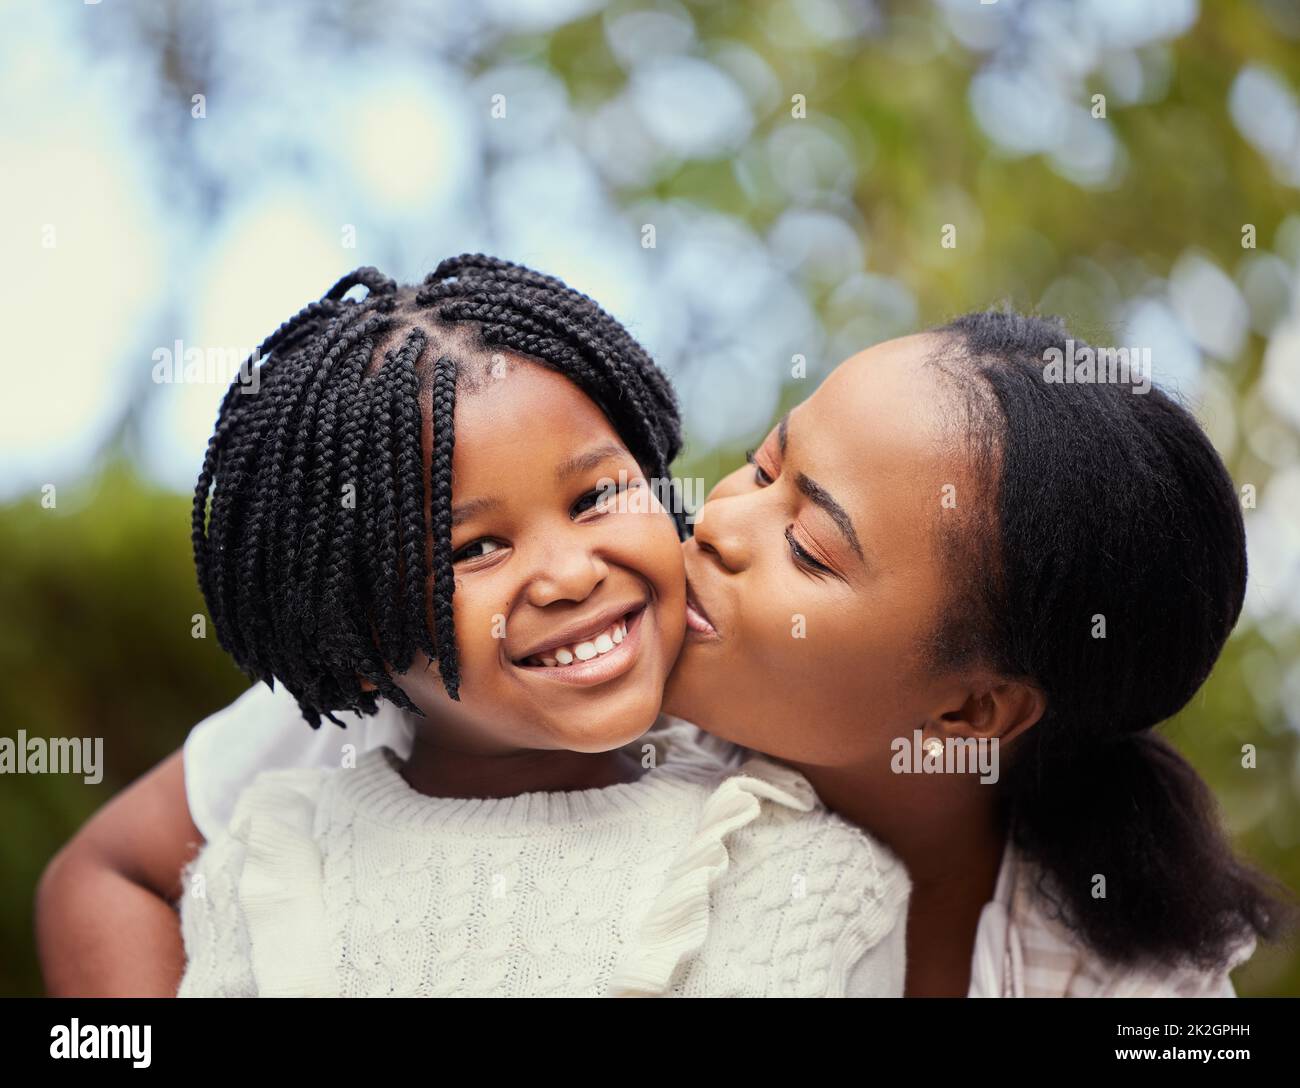 Avoir une mère signifie avoir un meilleur ami pour la vie. Photo d'une jeune mère donnant un baiser à sa fille dans la nature. Banque D'Images